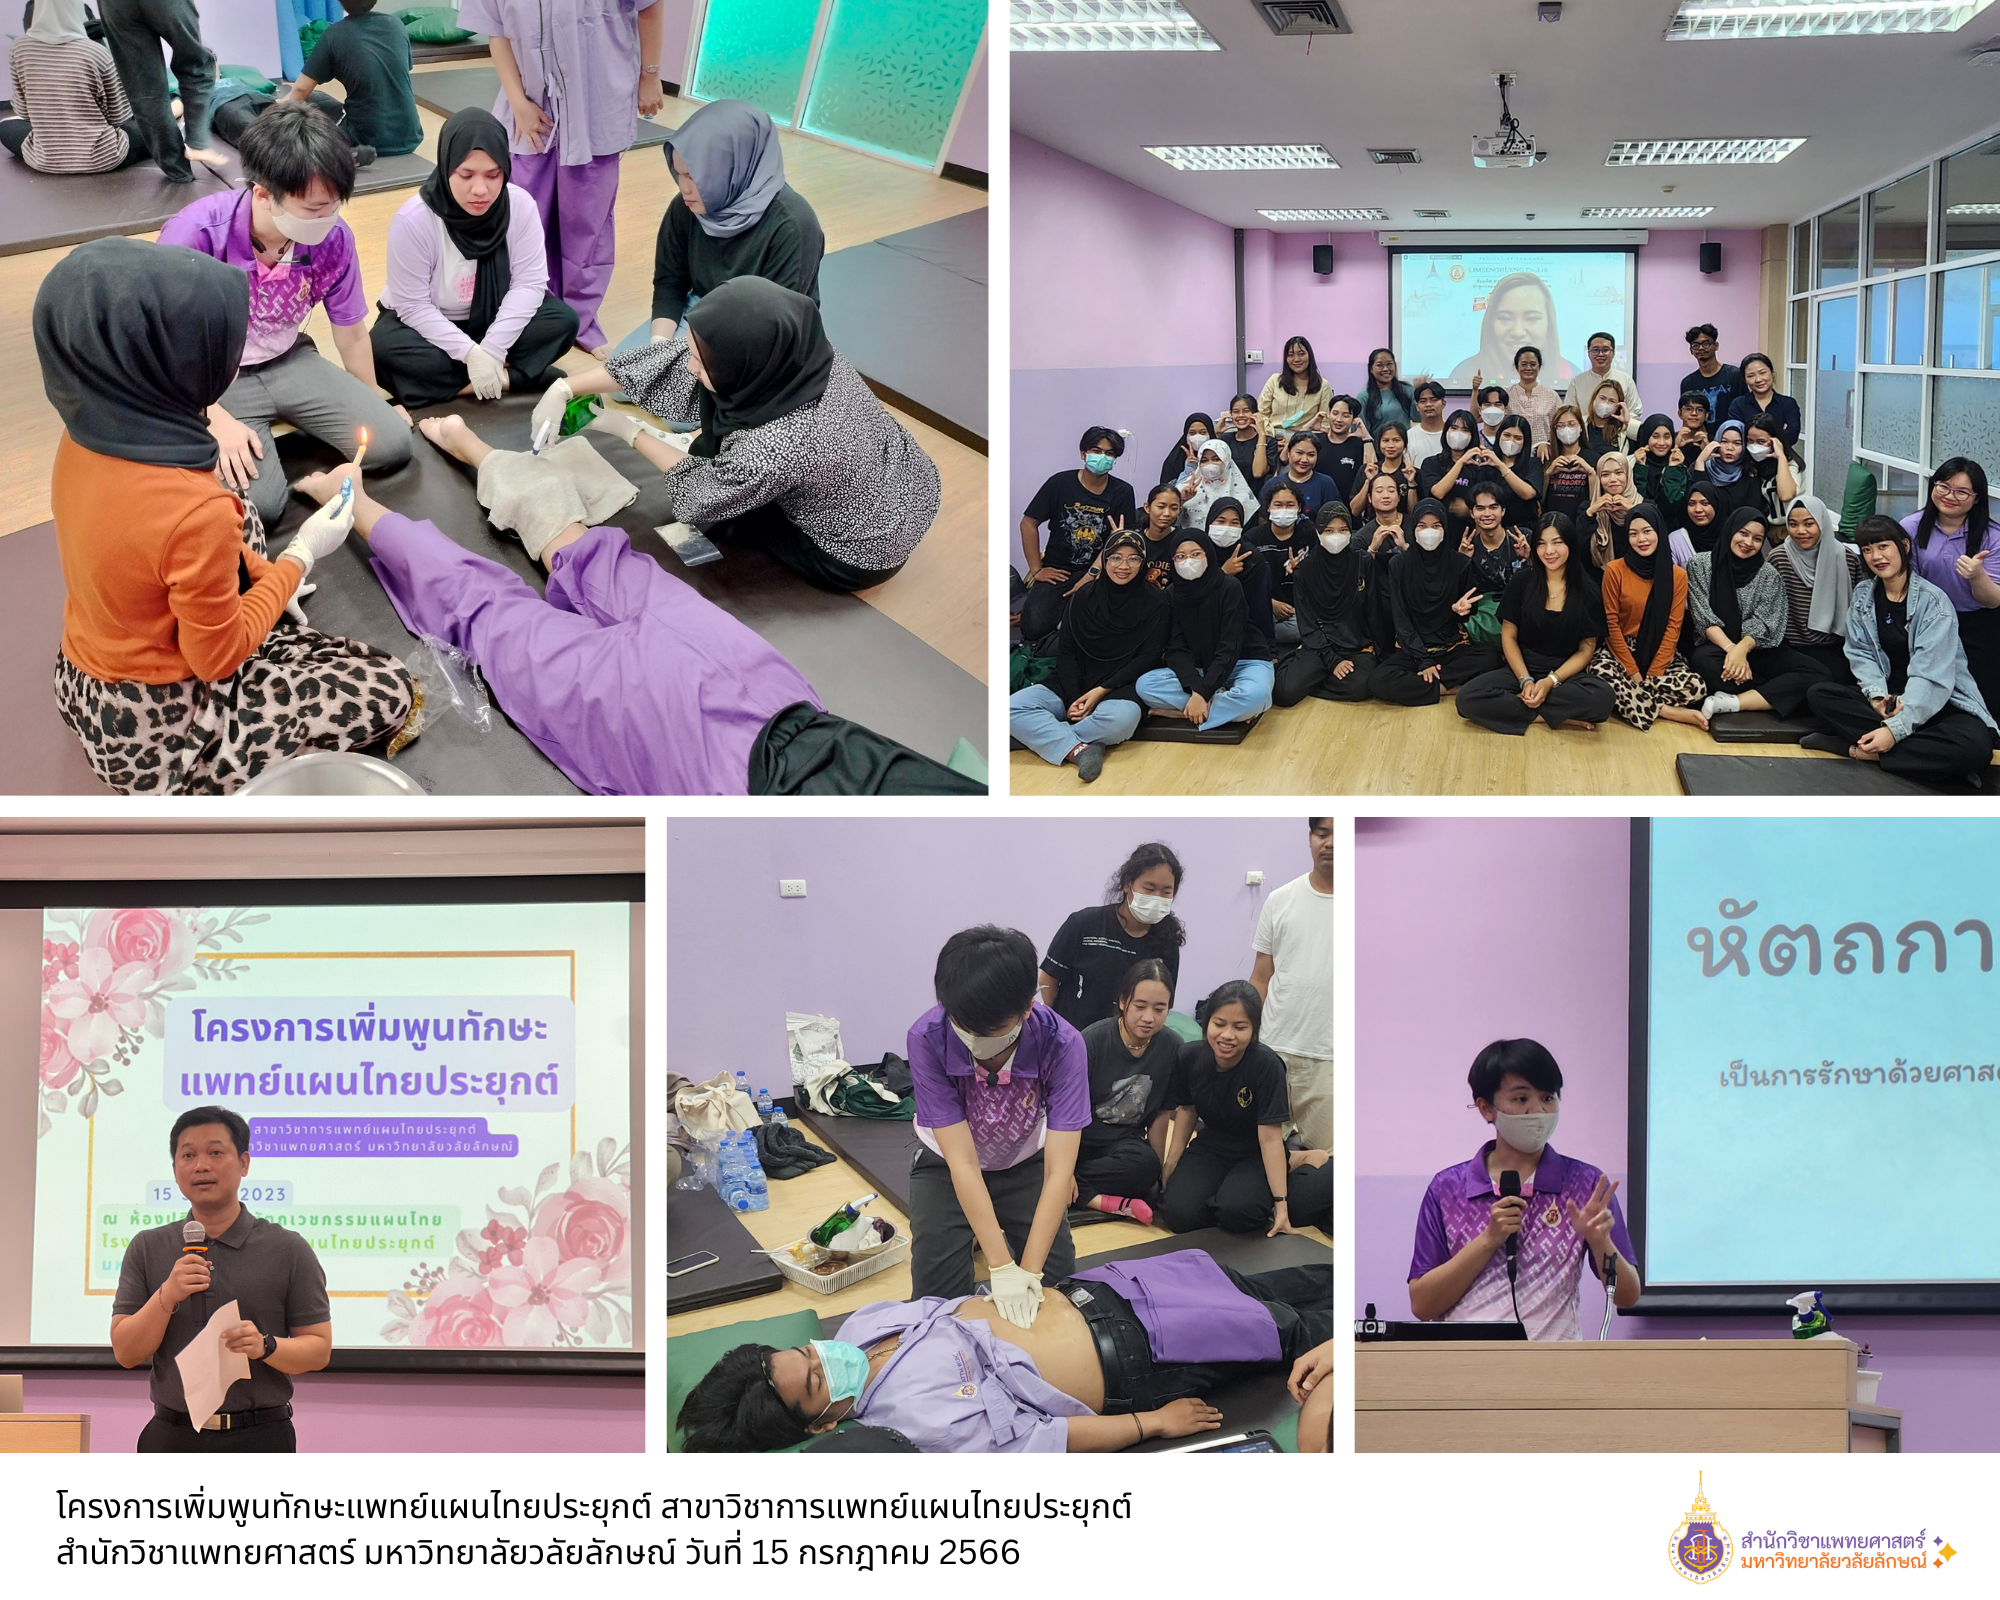 โครงการเพิ่มพูนทักษะแพทย์แผนไทยประยุกต์ สาขาวิชาการแพทย์แผนไทยประยุกต์ สำนักวิชาแพทยศาสตร์ มหาวิทยาลัยวลัยลักษณ์